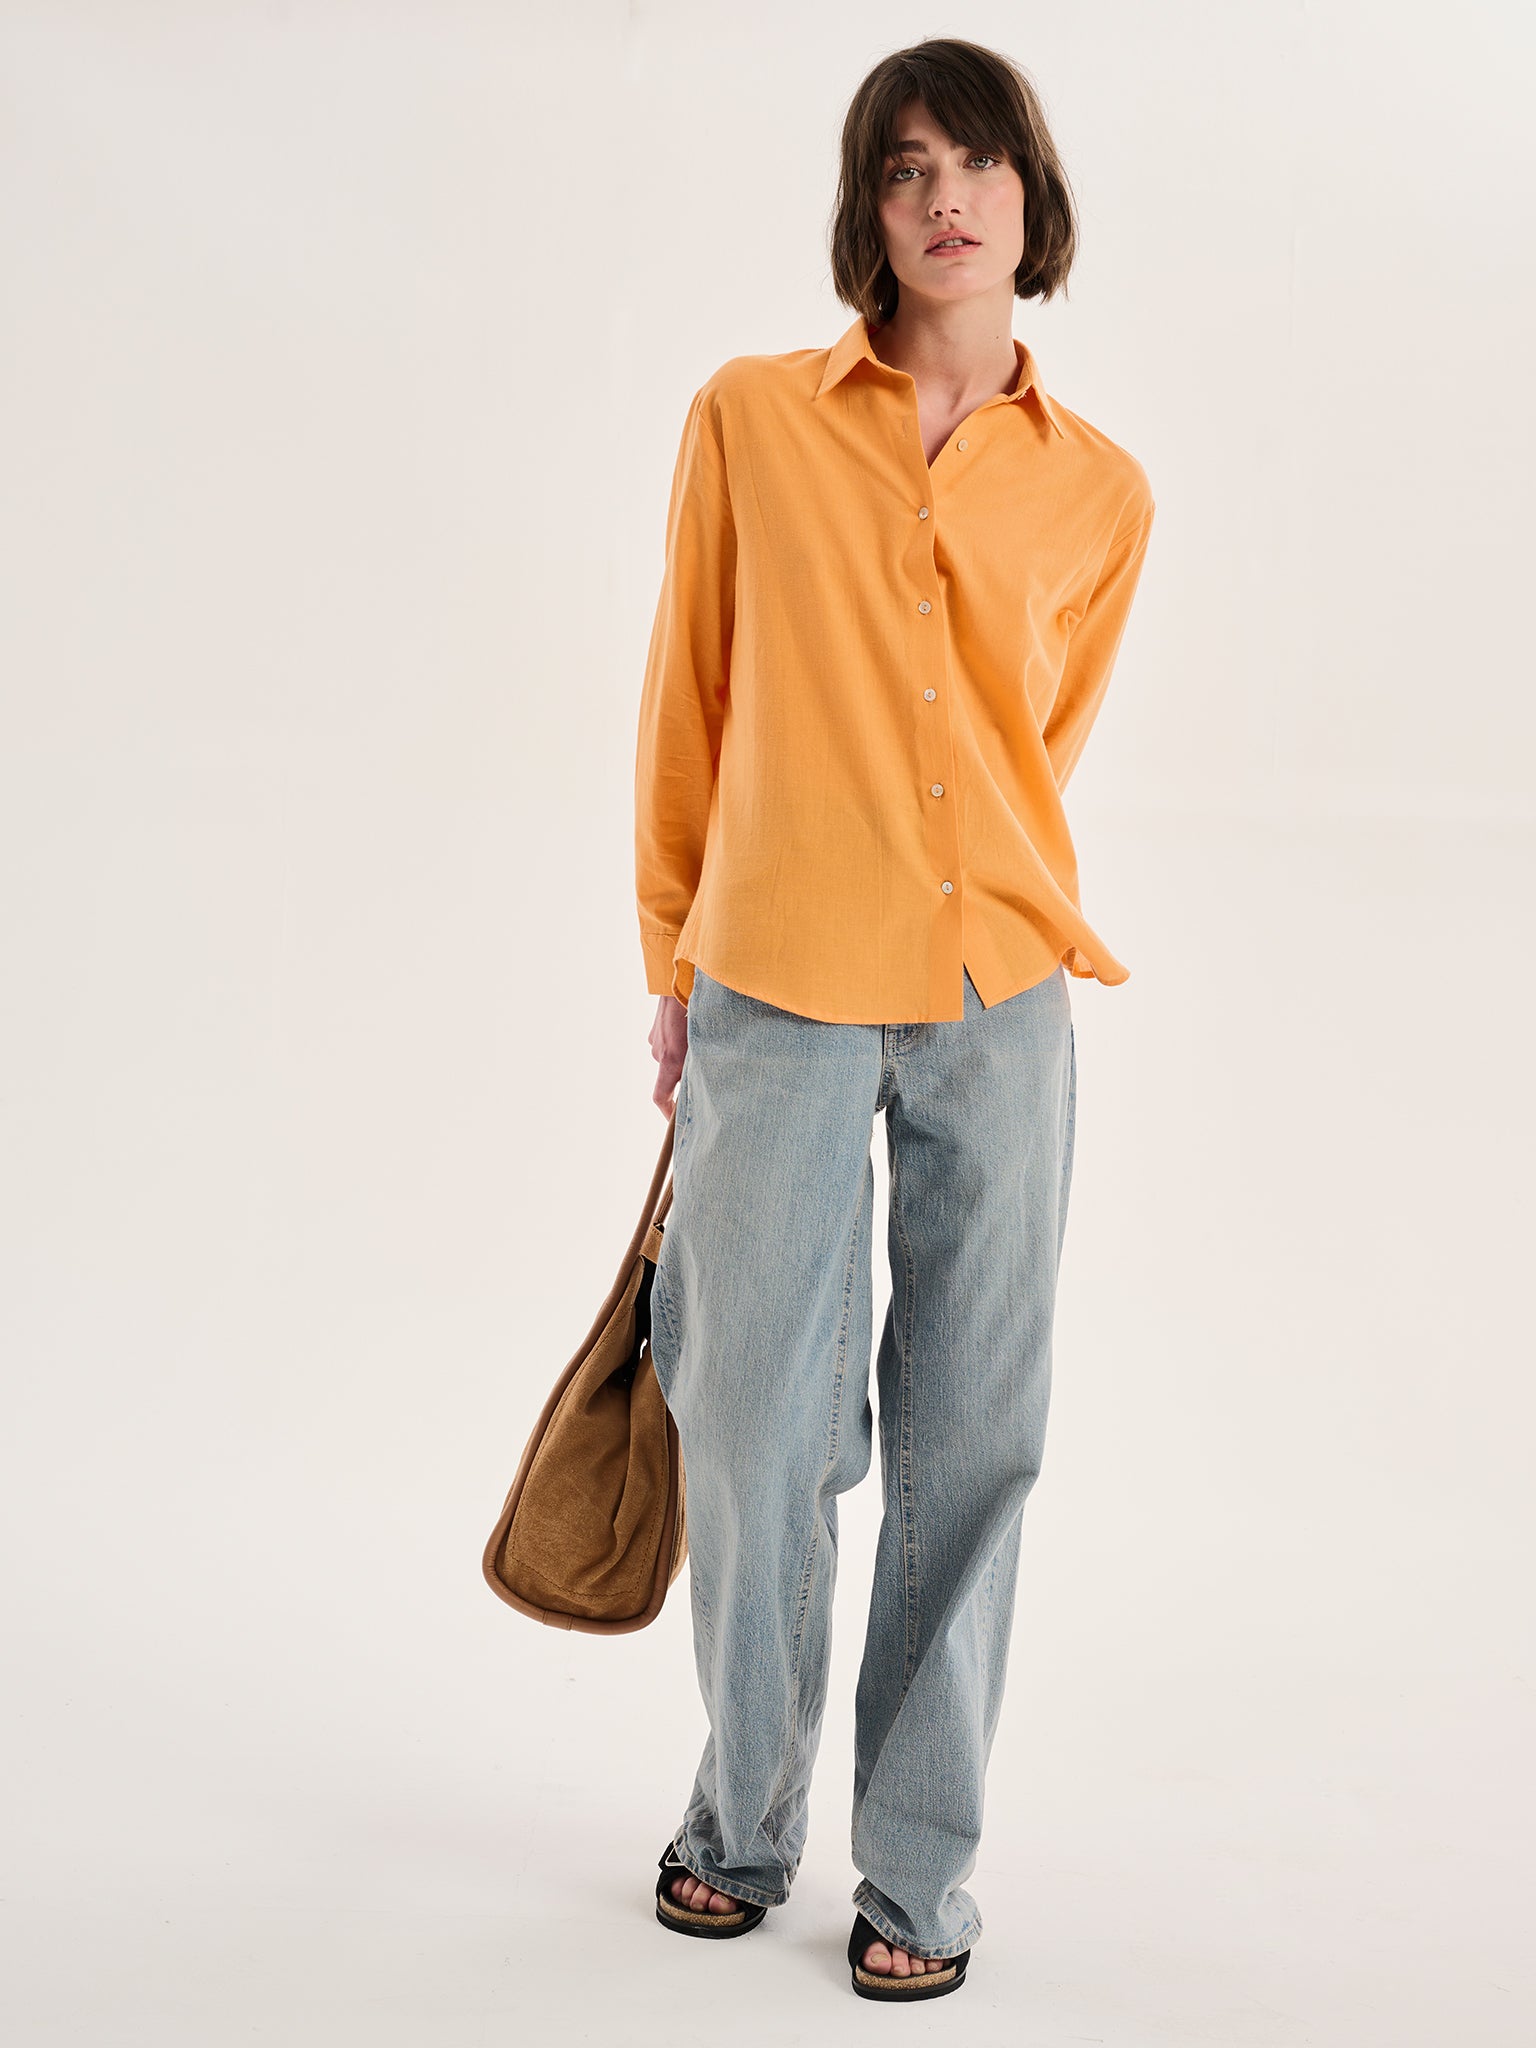 Evie Linen Oversized Shirt in Orange